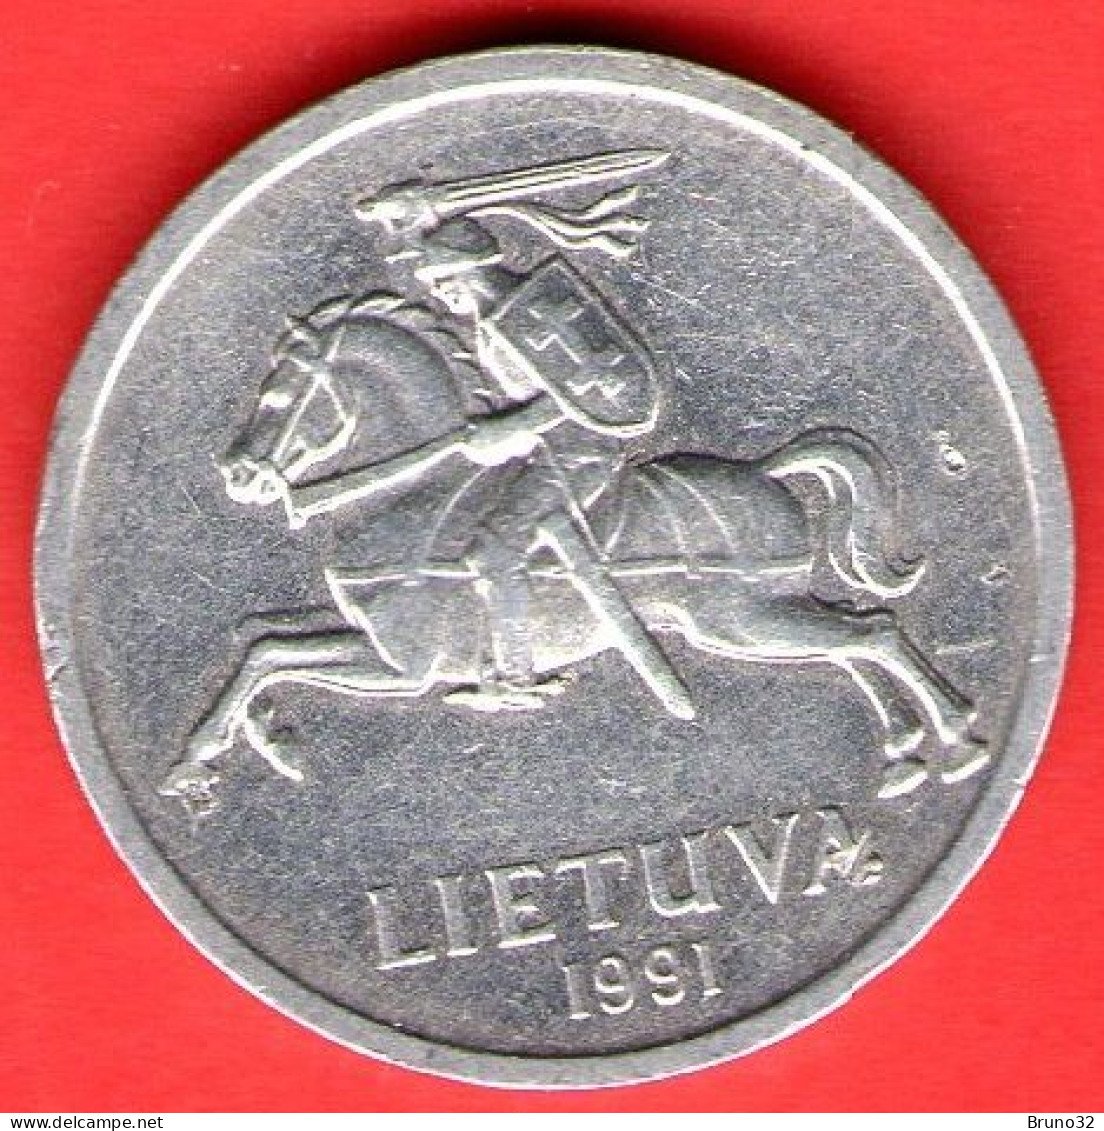 Lituania - Lietuva - Lithuania - 1991 - 1 Centas - QFDC/aUNC - Come Da Foto - Lituanie